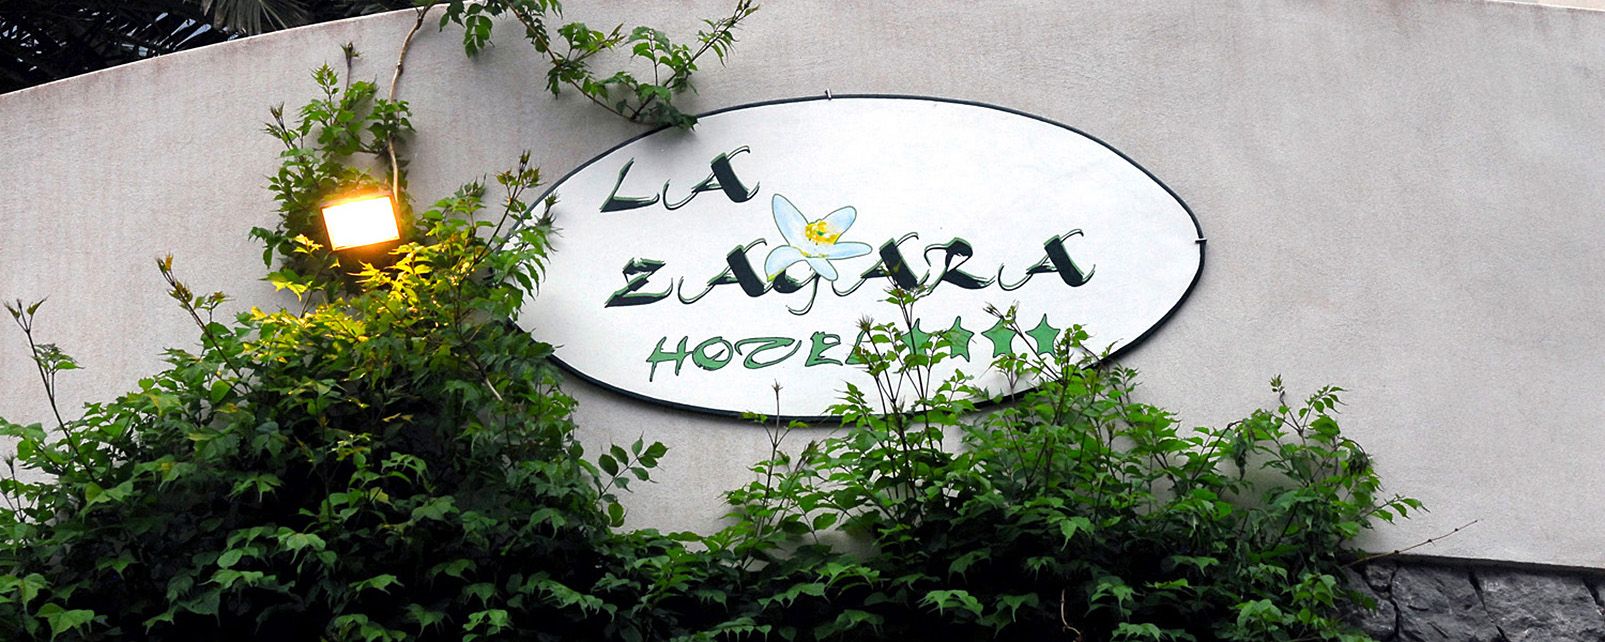 Hotel La Zagara